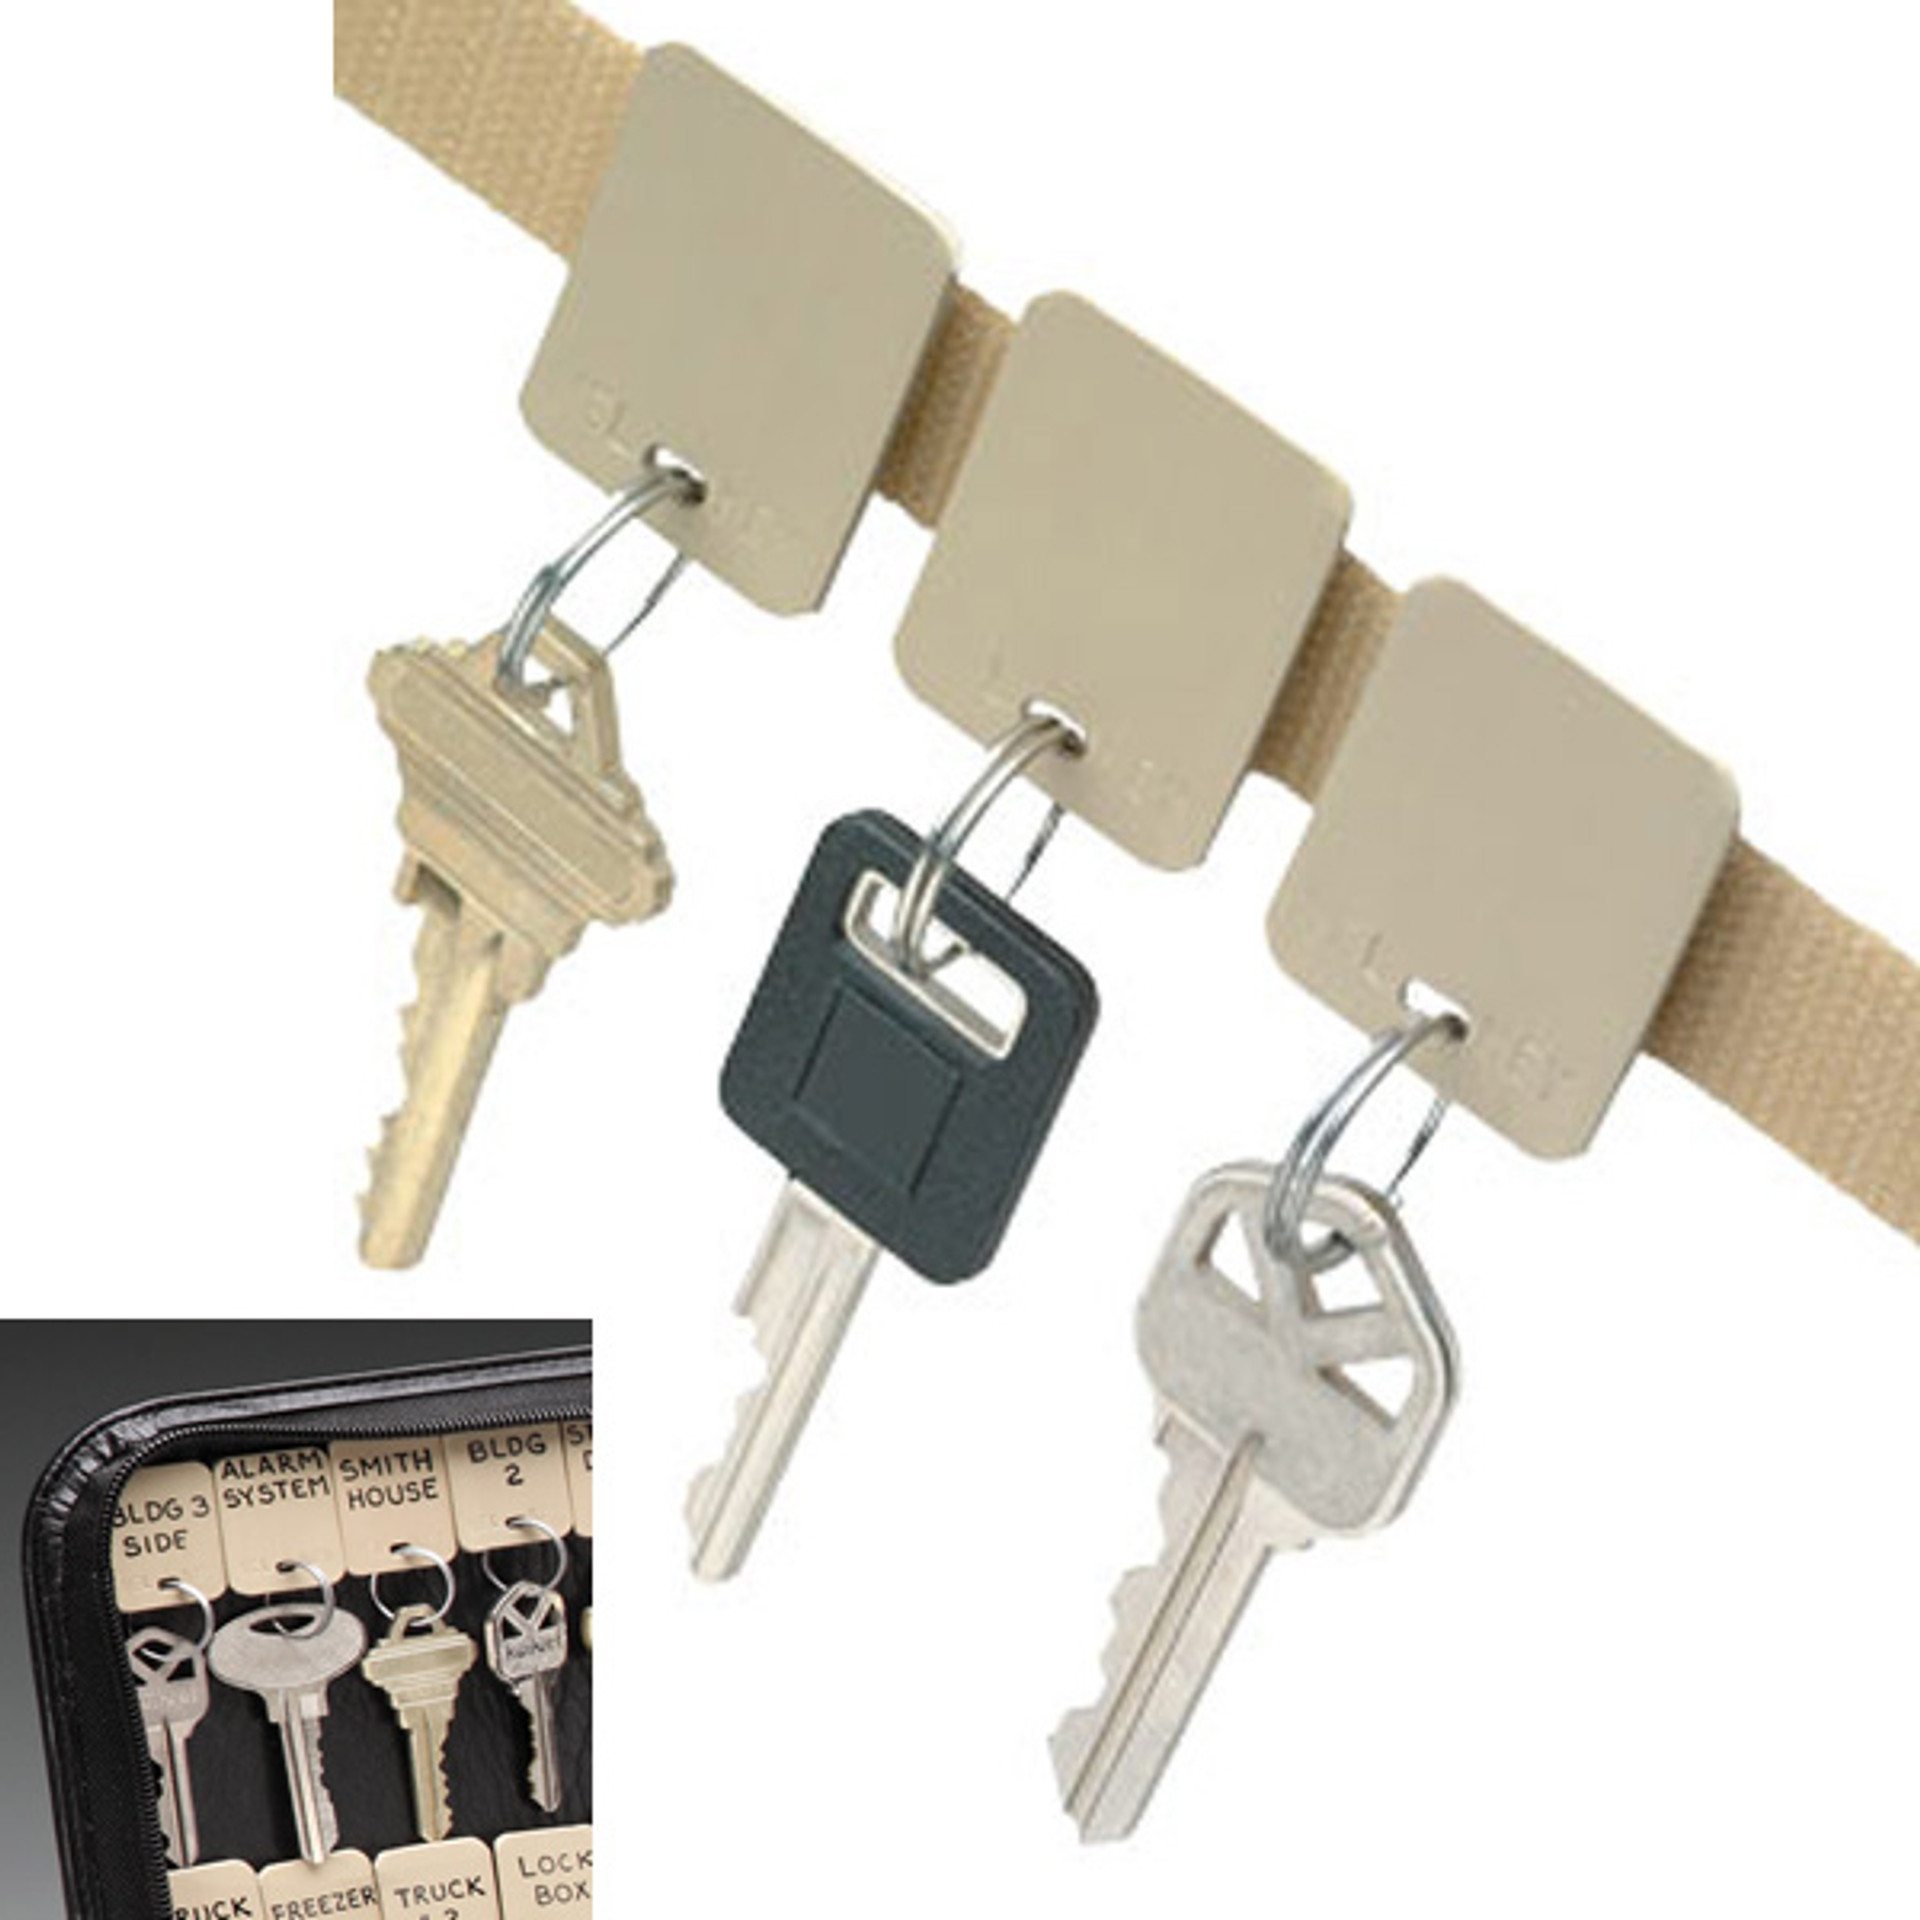 Key Organization | Key Storage | Key Identifiers